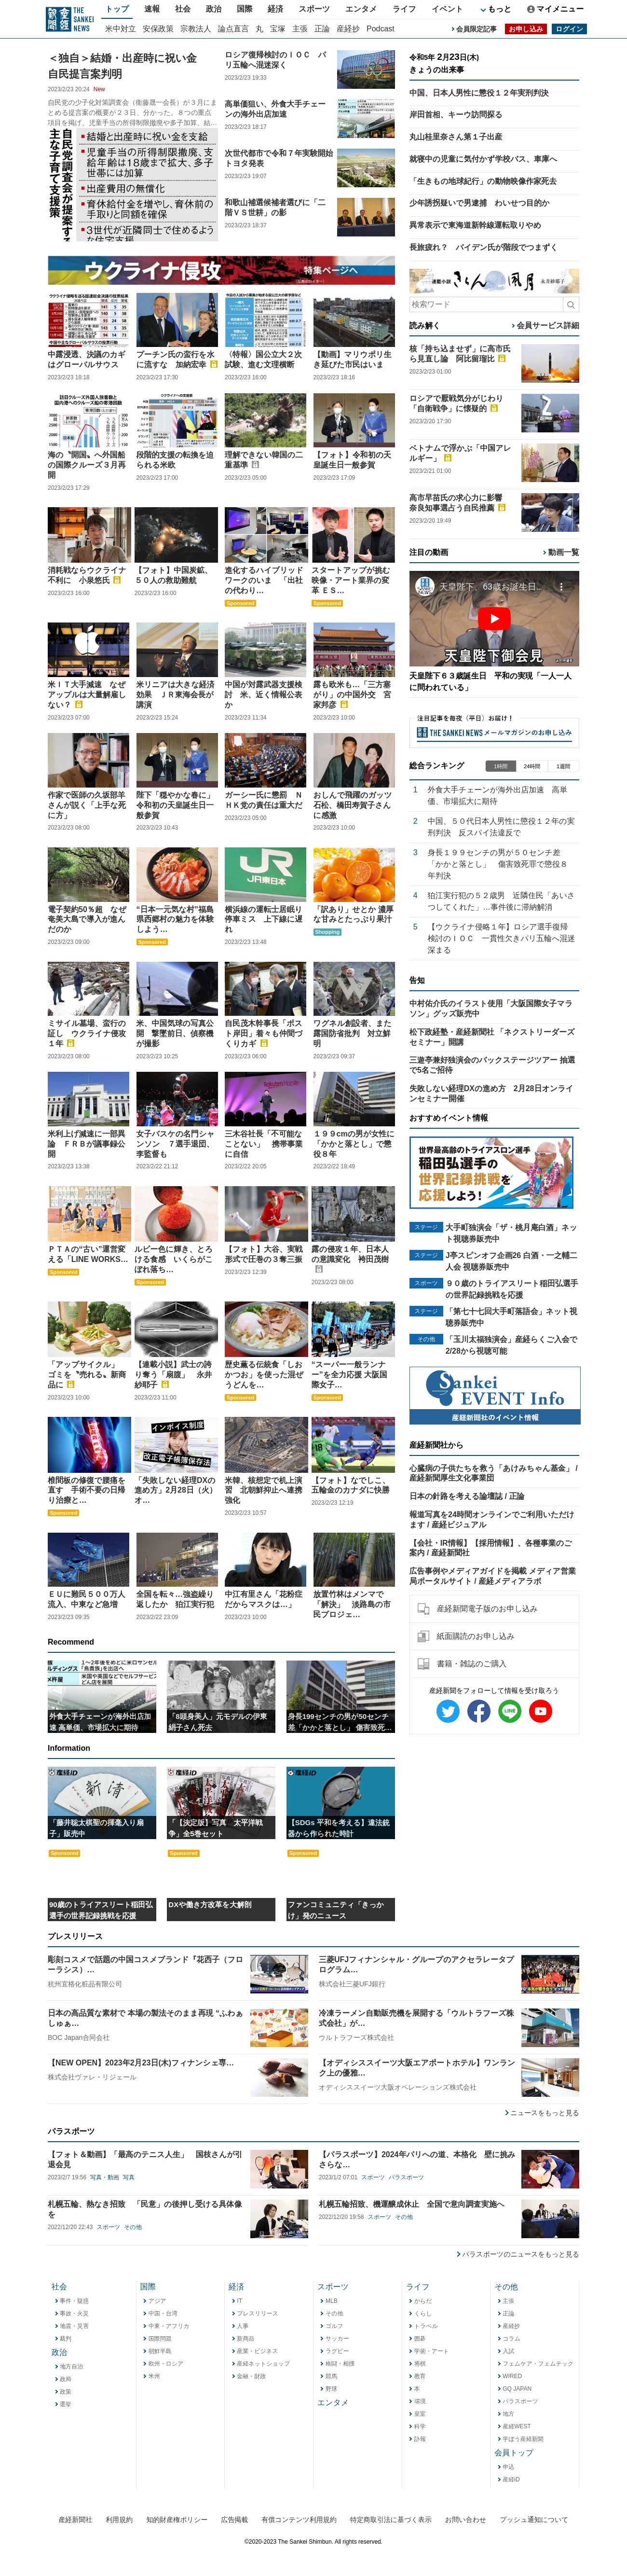 Sankei Shimbun at 2023-02-23 21:03:54+09:00 local time